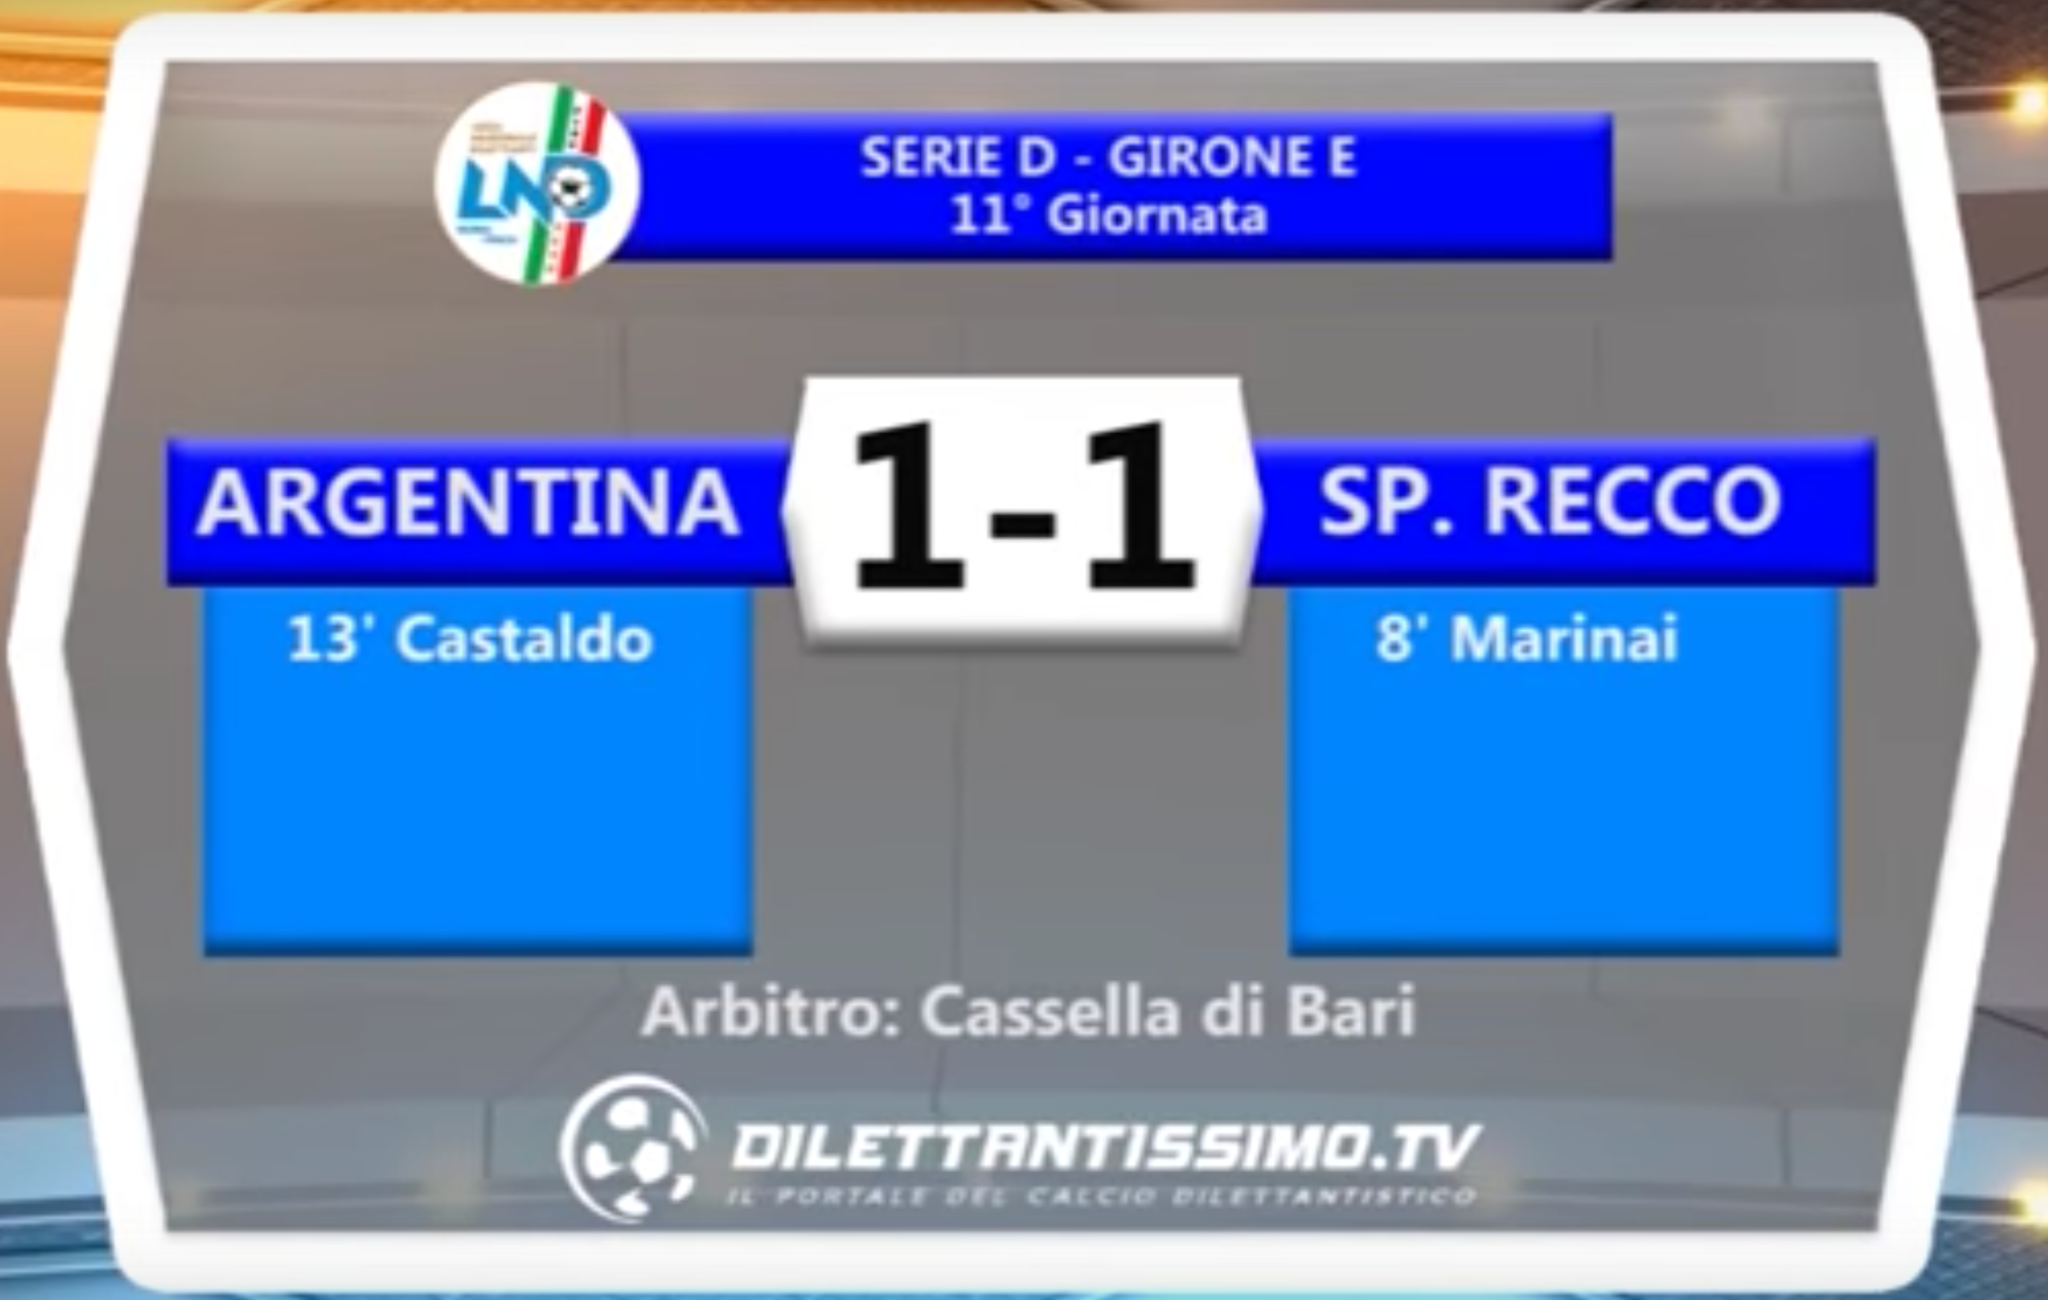 VIDEO: ARGENTINA – SP.RECCO 1-1. Serie D Girone E. 11ª Giornata